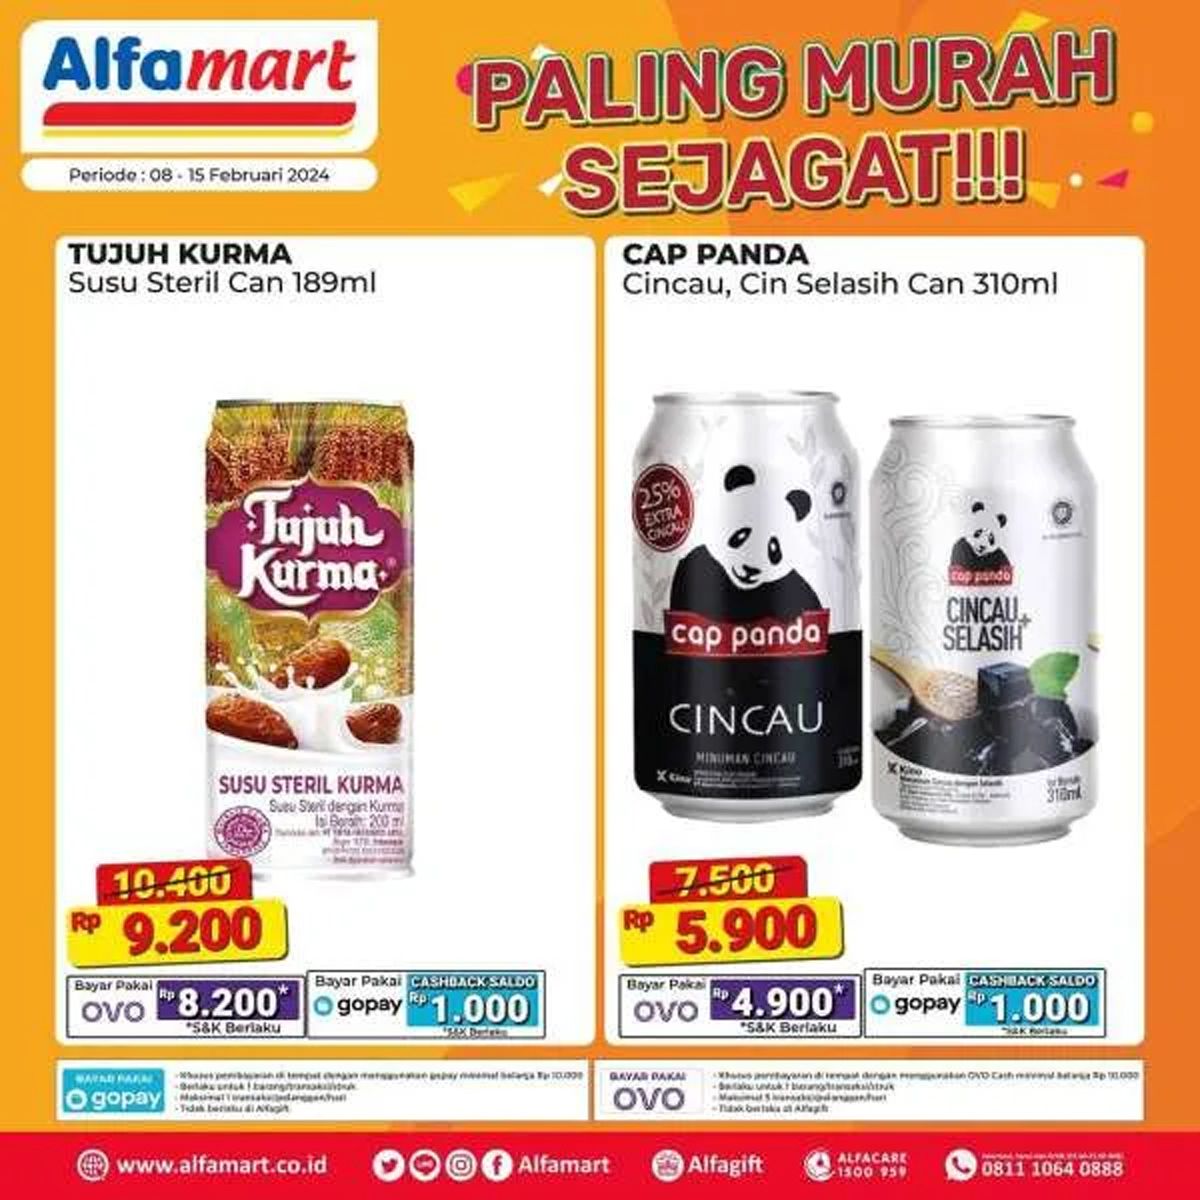  Katalog 1 daftar produk yang dijual dalam promo program Alfamart Paling Murah Sejagat periode 8 - 15 Februari 2024./Instagram Alfamart.